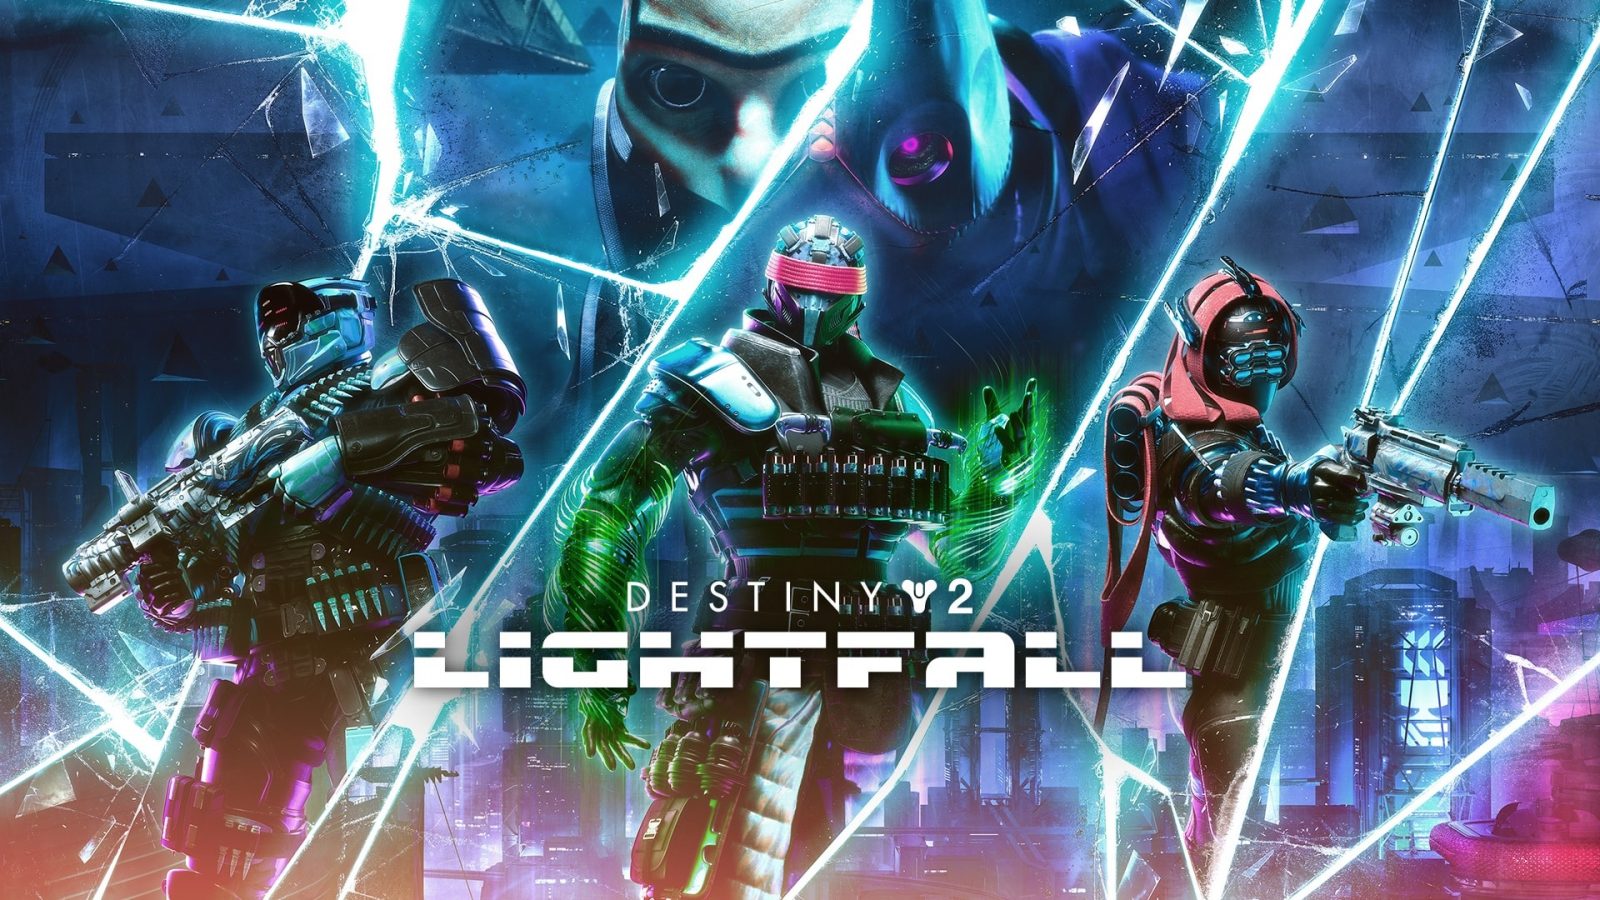 Destiny 2 Lightfall Art Art המציגה דמויות מפתח מאחורי ההתרחבות